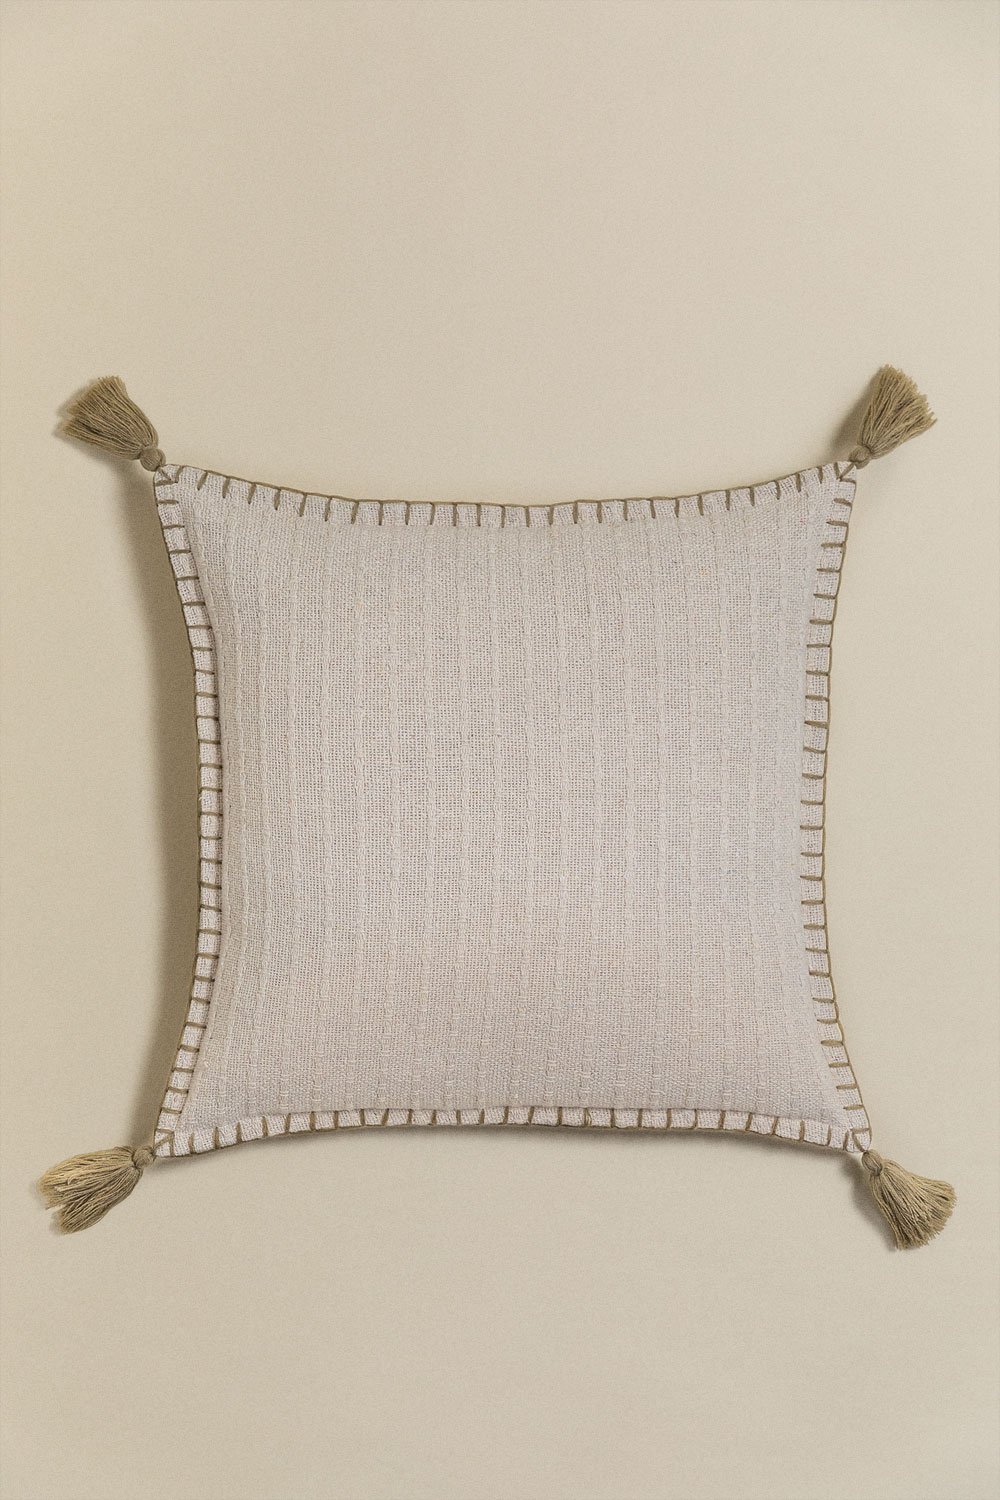 Cuscino quadrato in cotone e lino (45x45 cm) Gautier, immagine della galleria 1